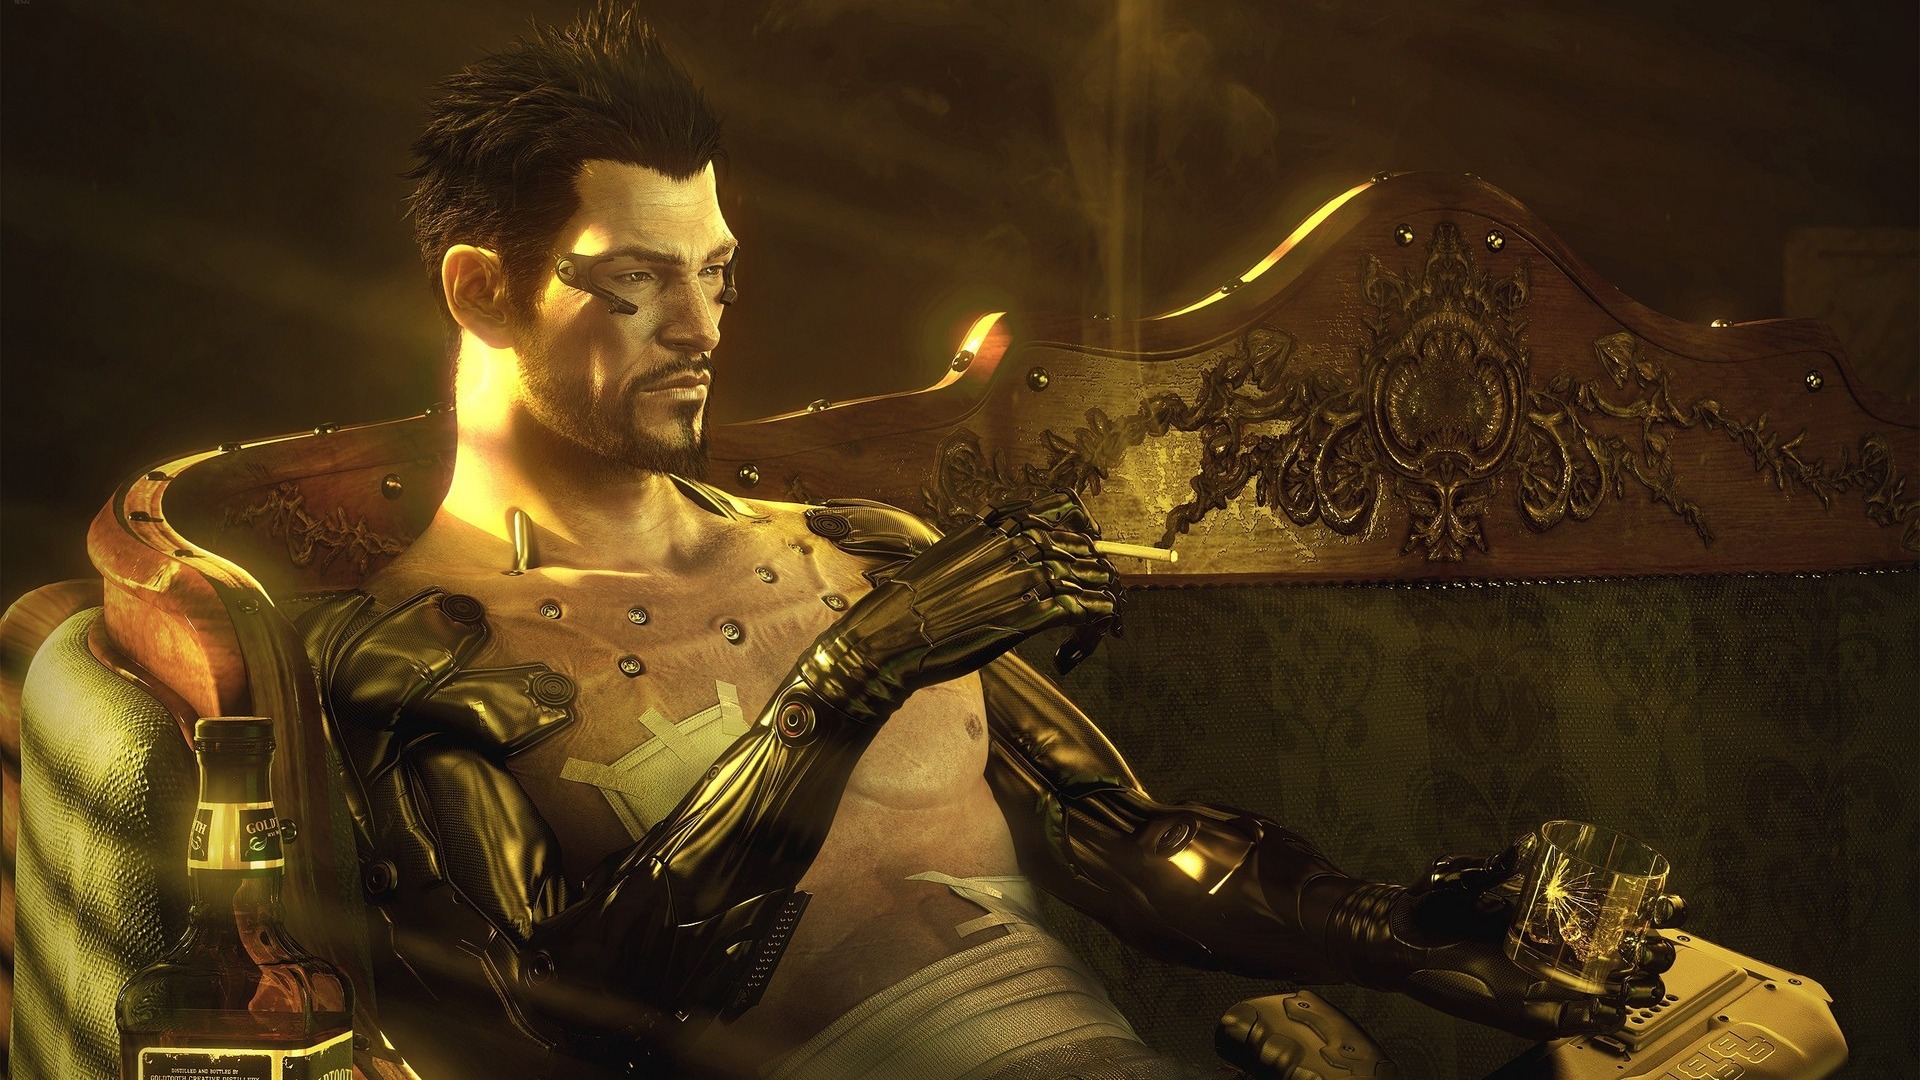 Deus Ex Human Revolution HD Wallpaper